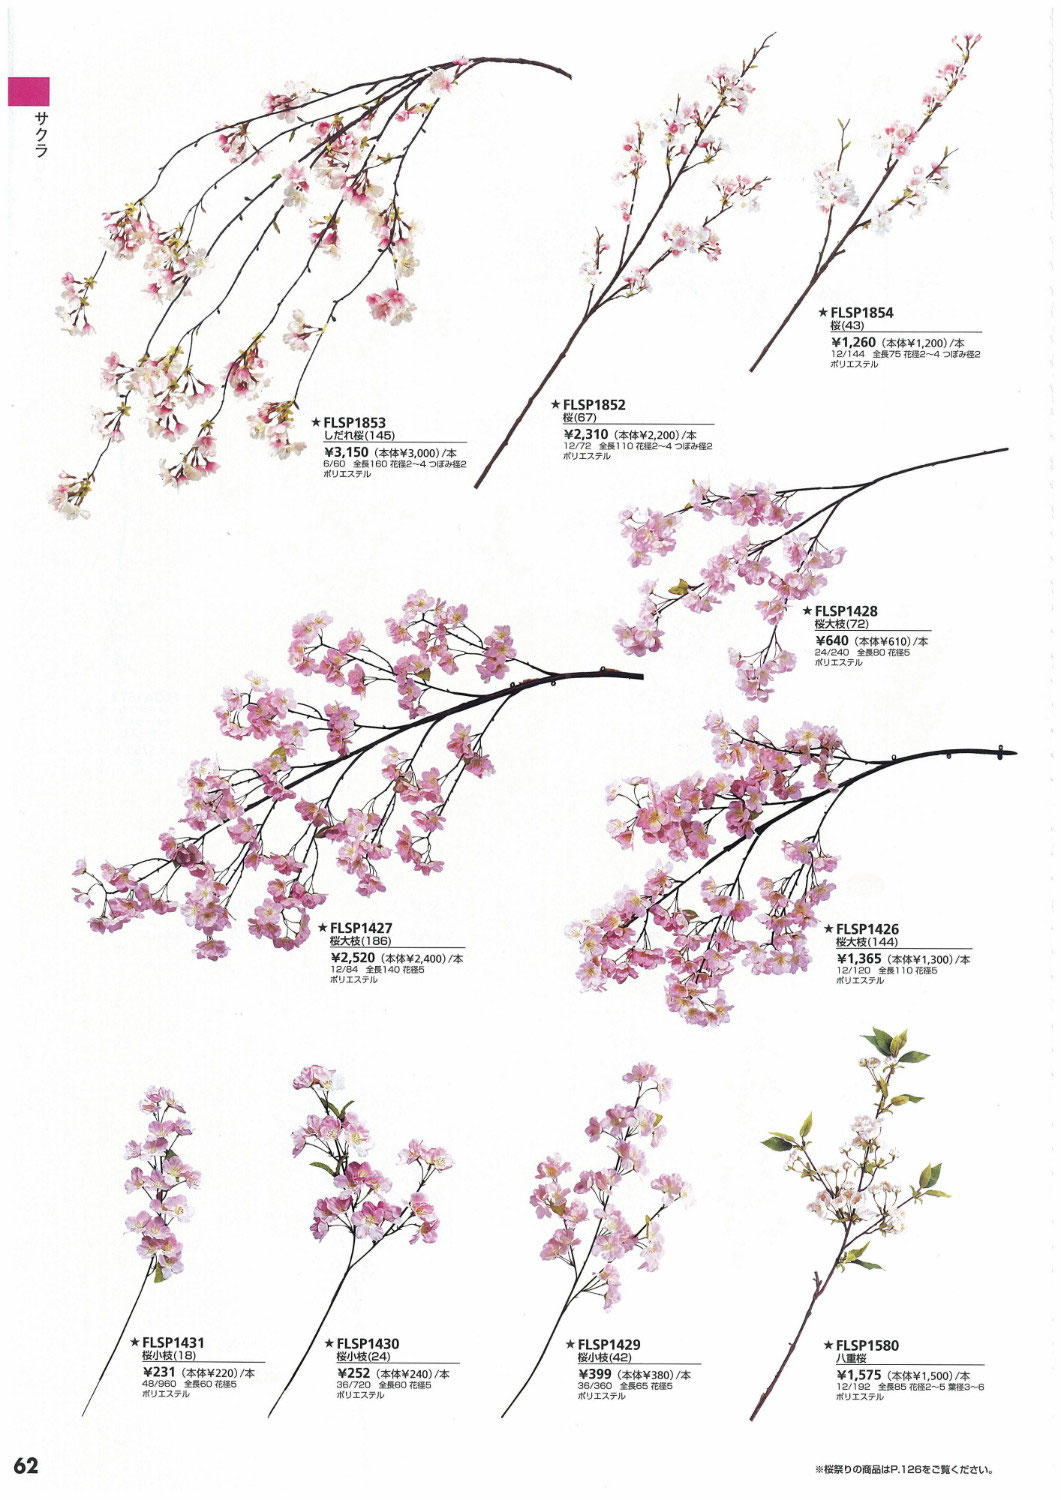 桜 さくら のディスプレイ飾り用品 3 桜飾り 桜 さくら 造花 ぼんぼりの春ディスプレイ品の販売店